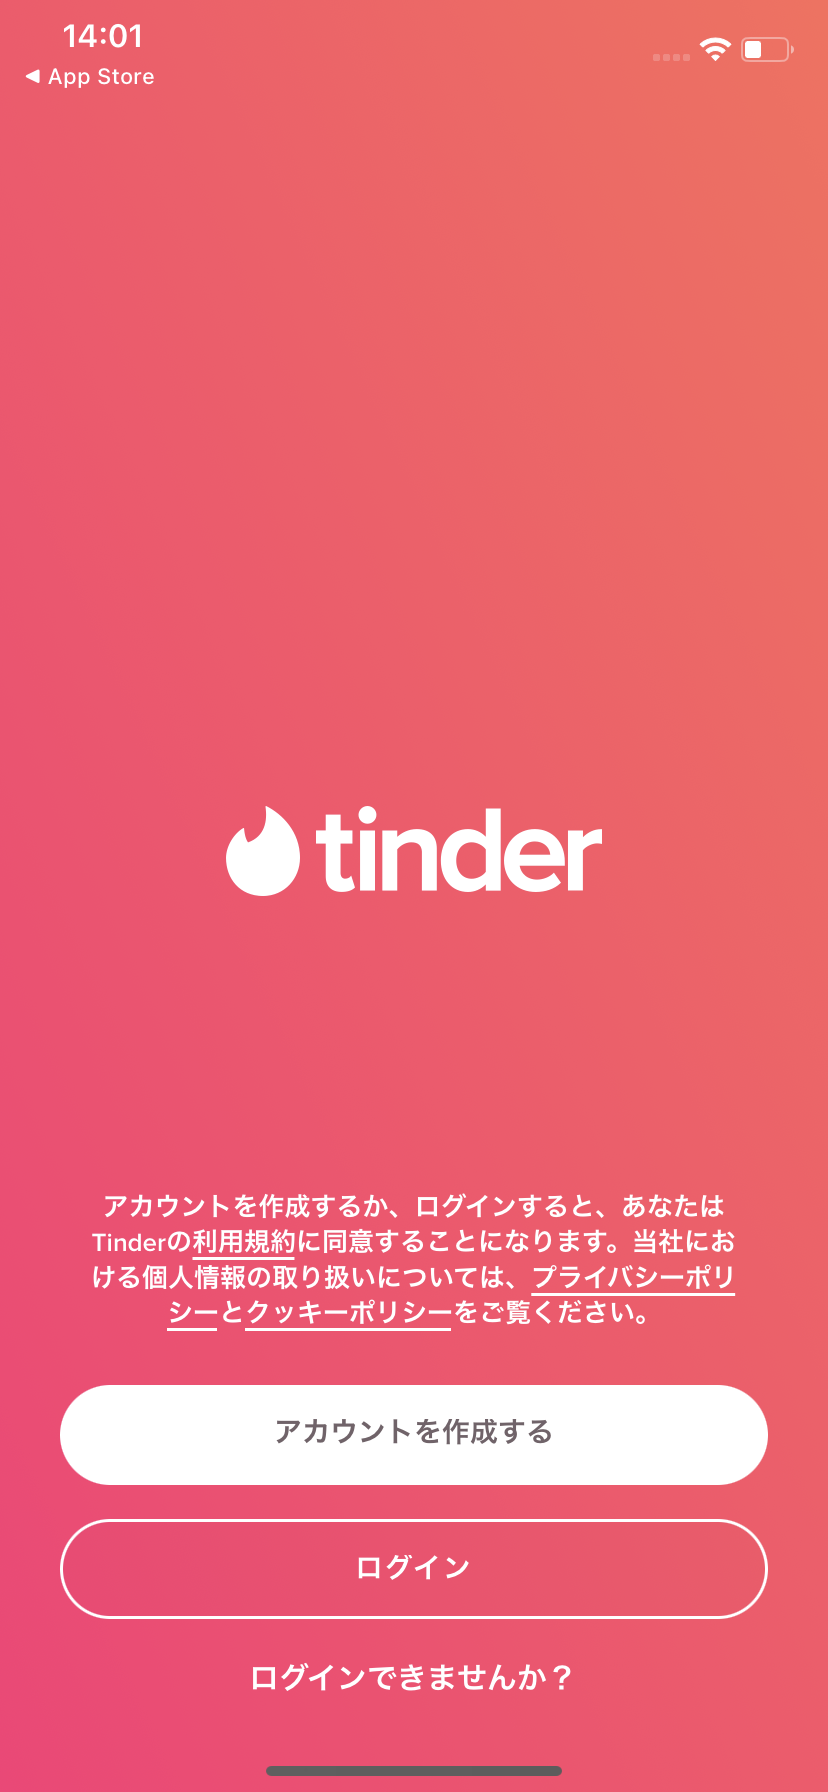 Tinderの公式サイト画像